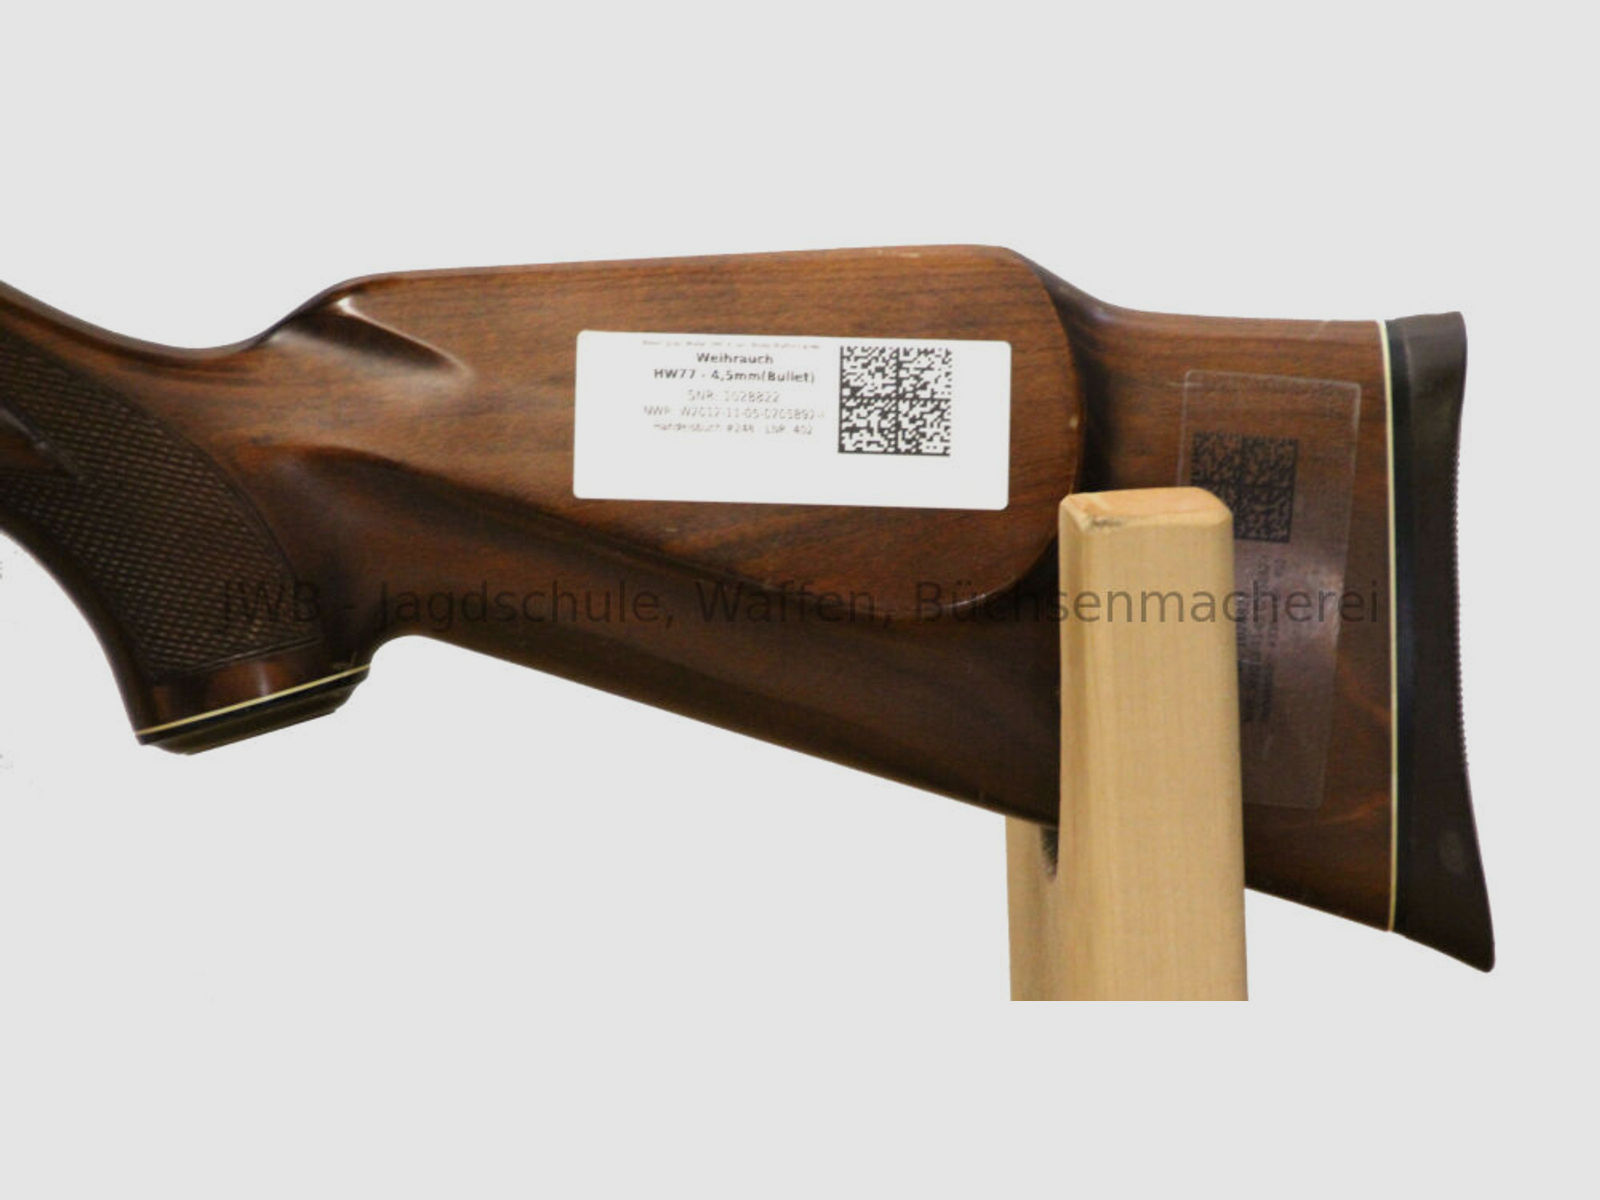 Weihrauch HW77	 4,5mm(Bullet)